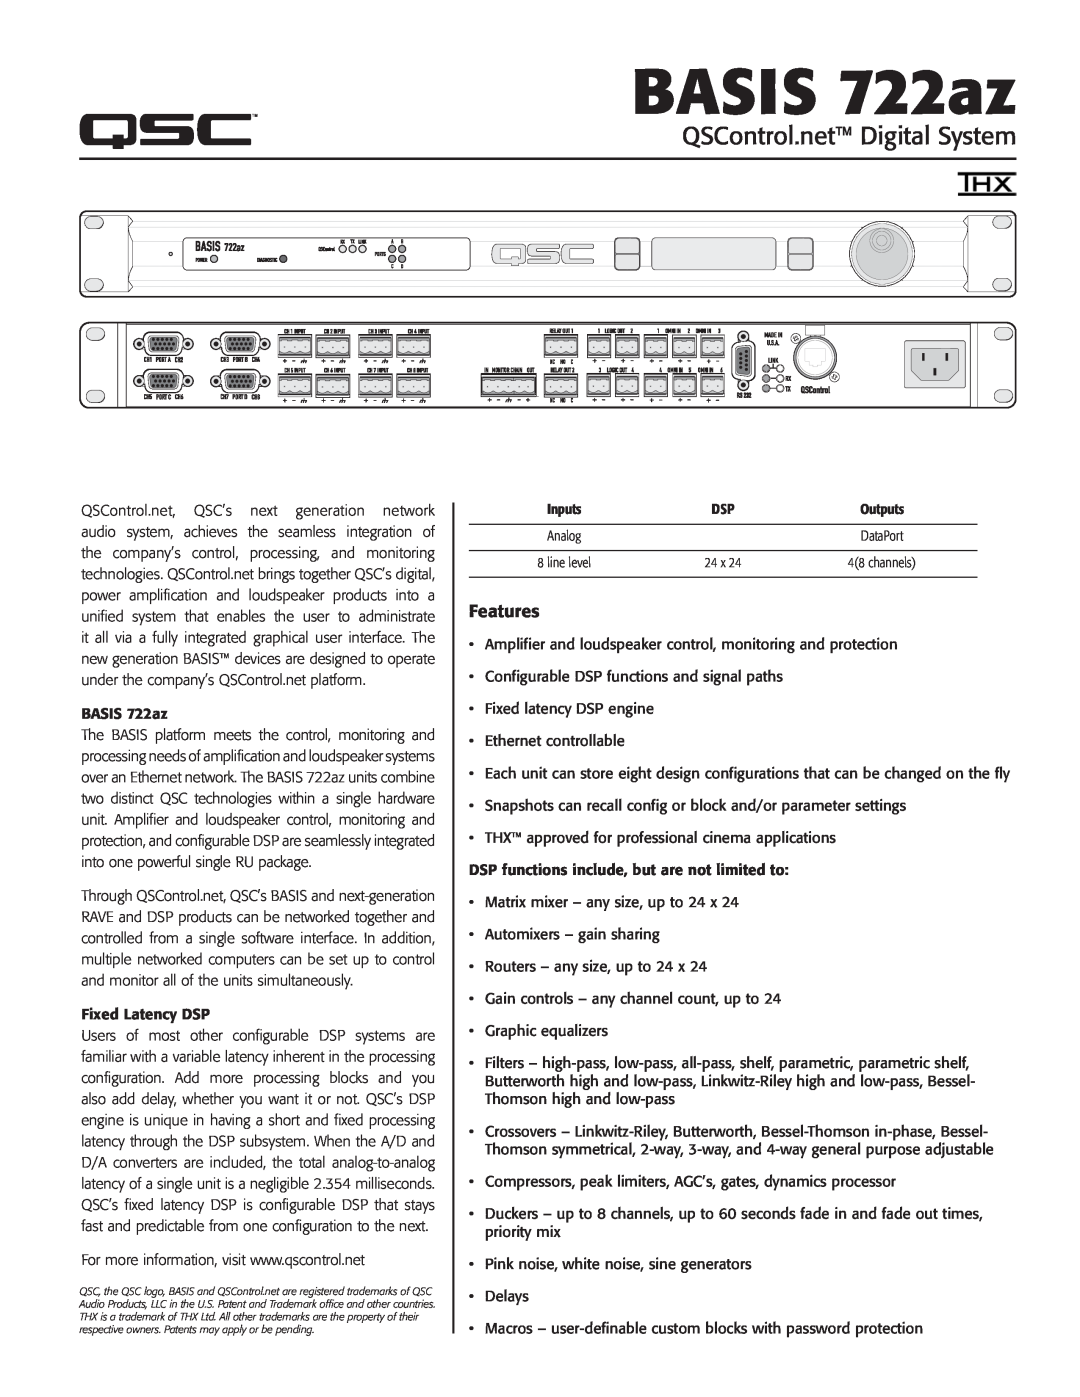 QSC Audio manual TD-000145-00, BASIS 722az 